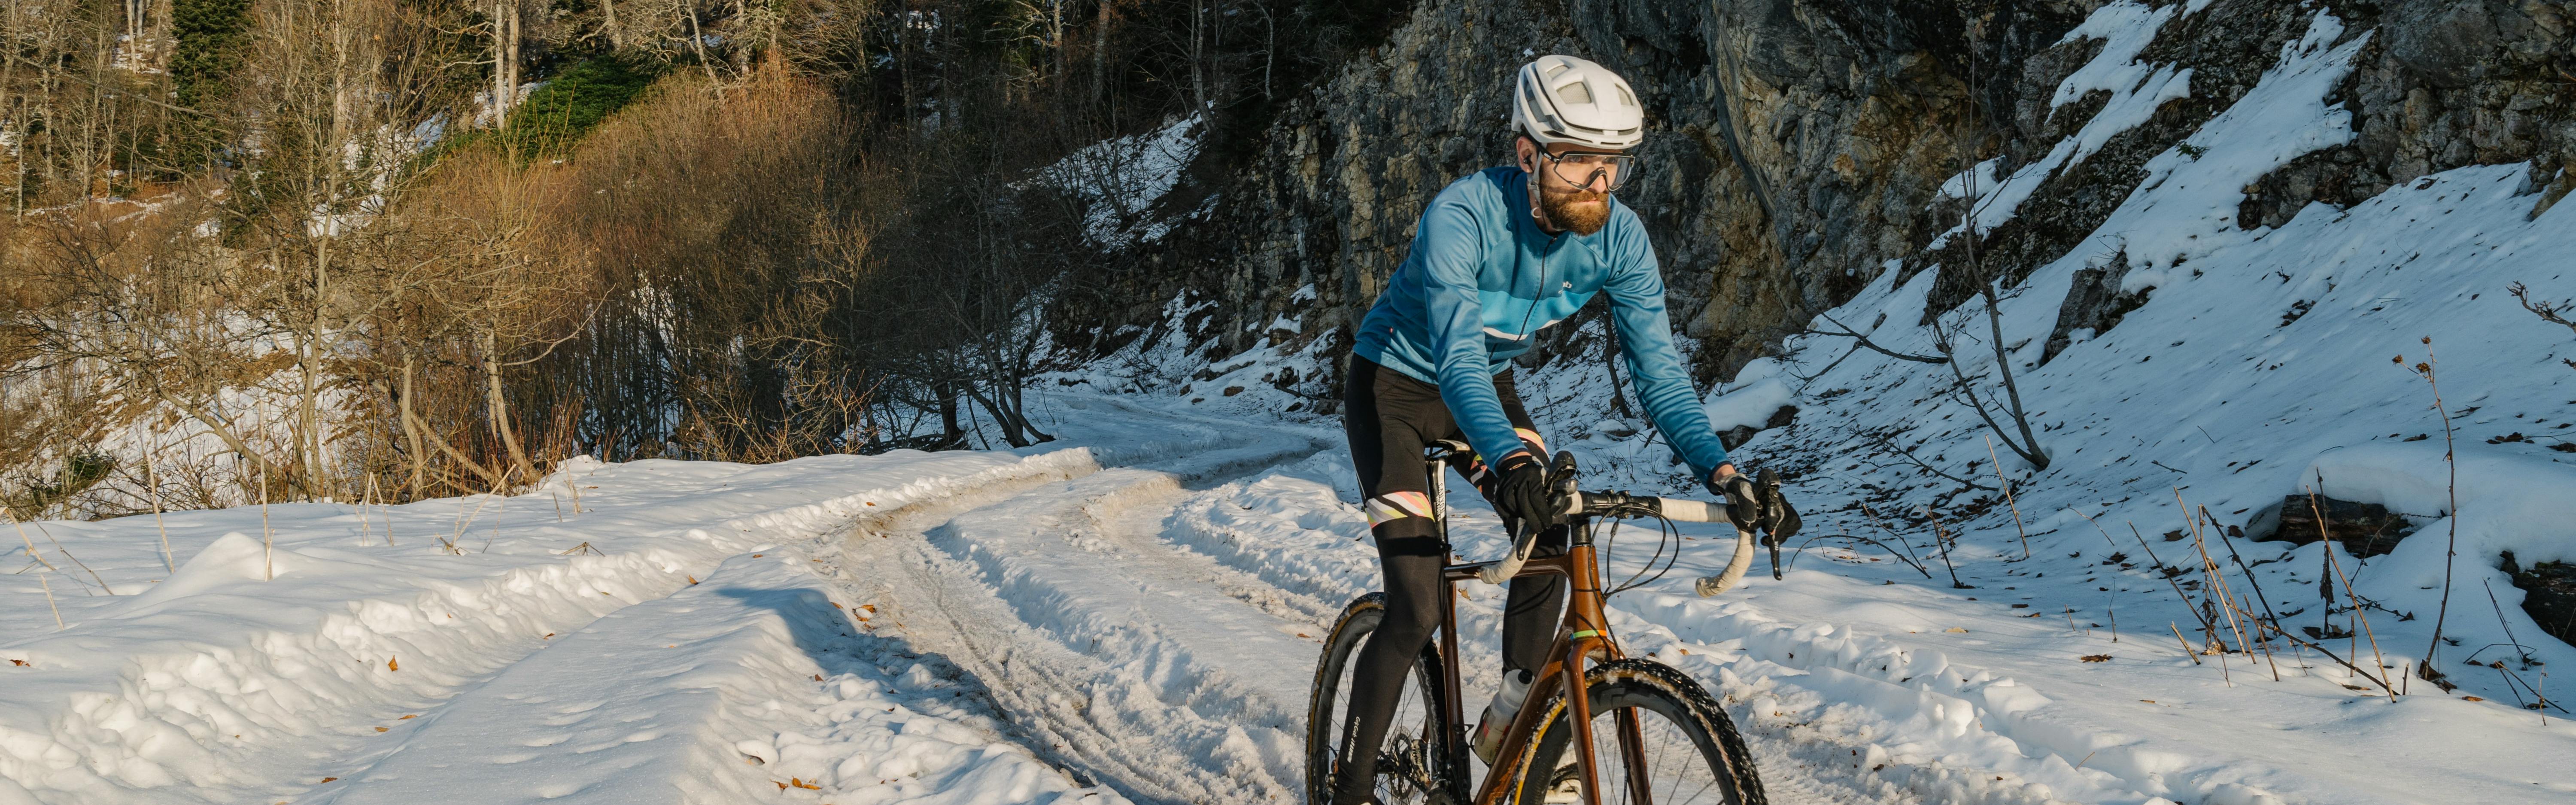 Club Deep Winter Tights Black: Men's Cycling Clothing